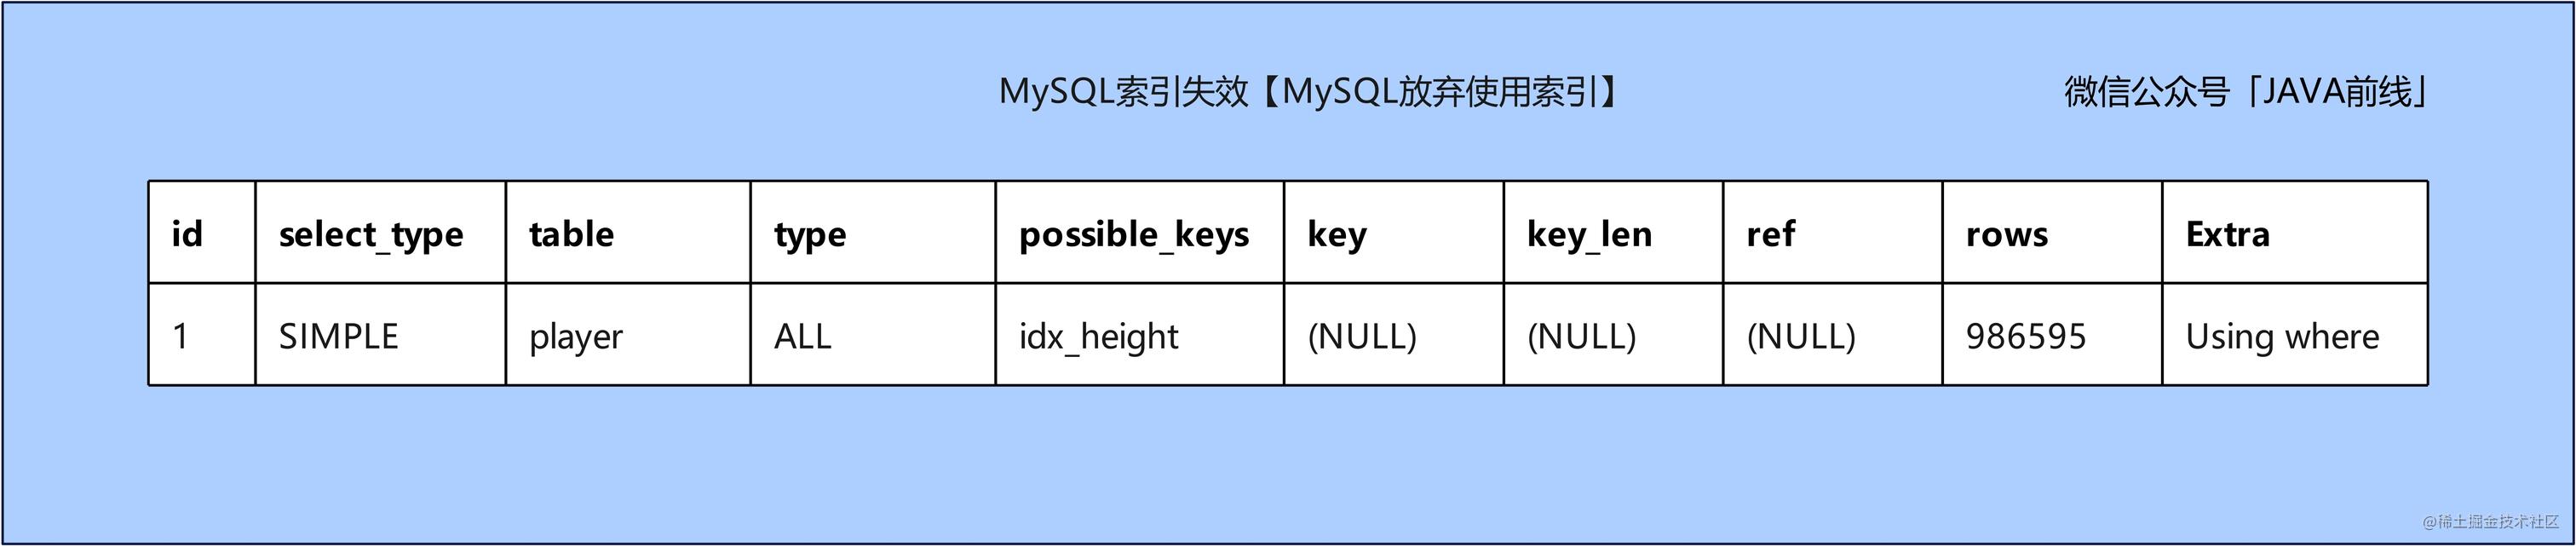 05 索引失效_MySQL放弃使用索引.jpg